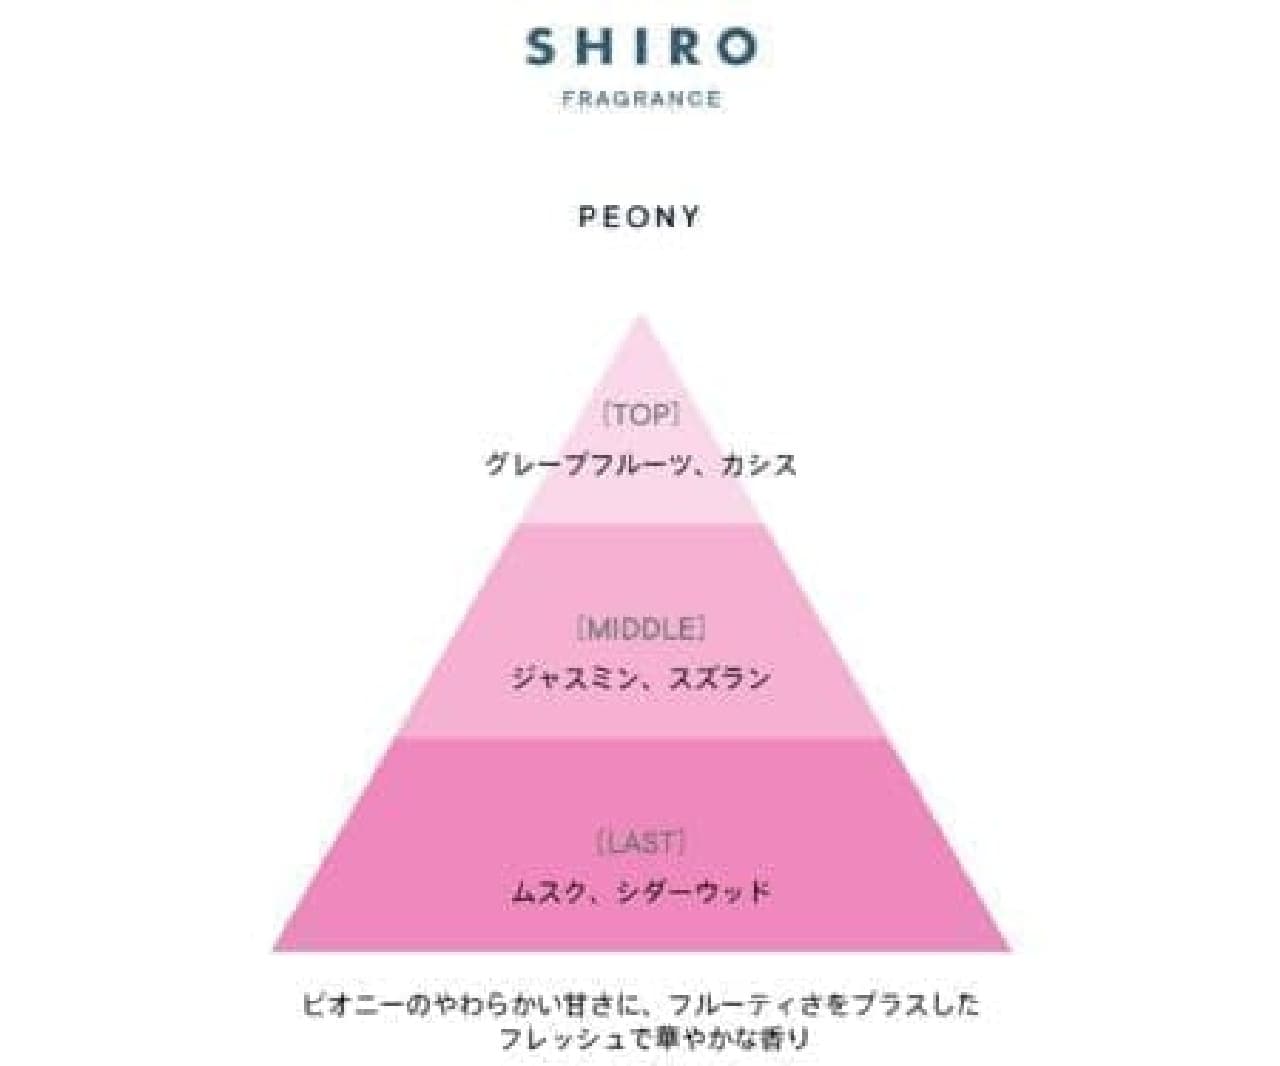 SHIRO 春に大人気「ピオニー」限定フレグランス